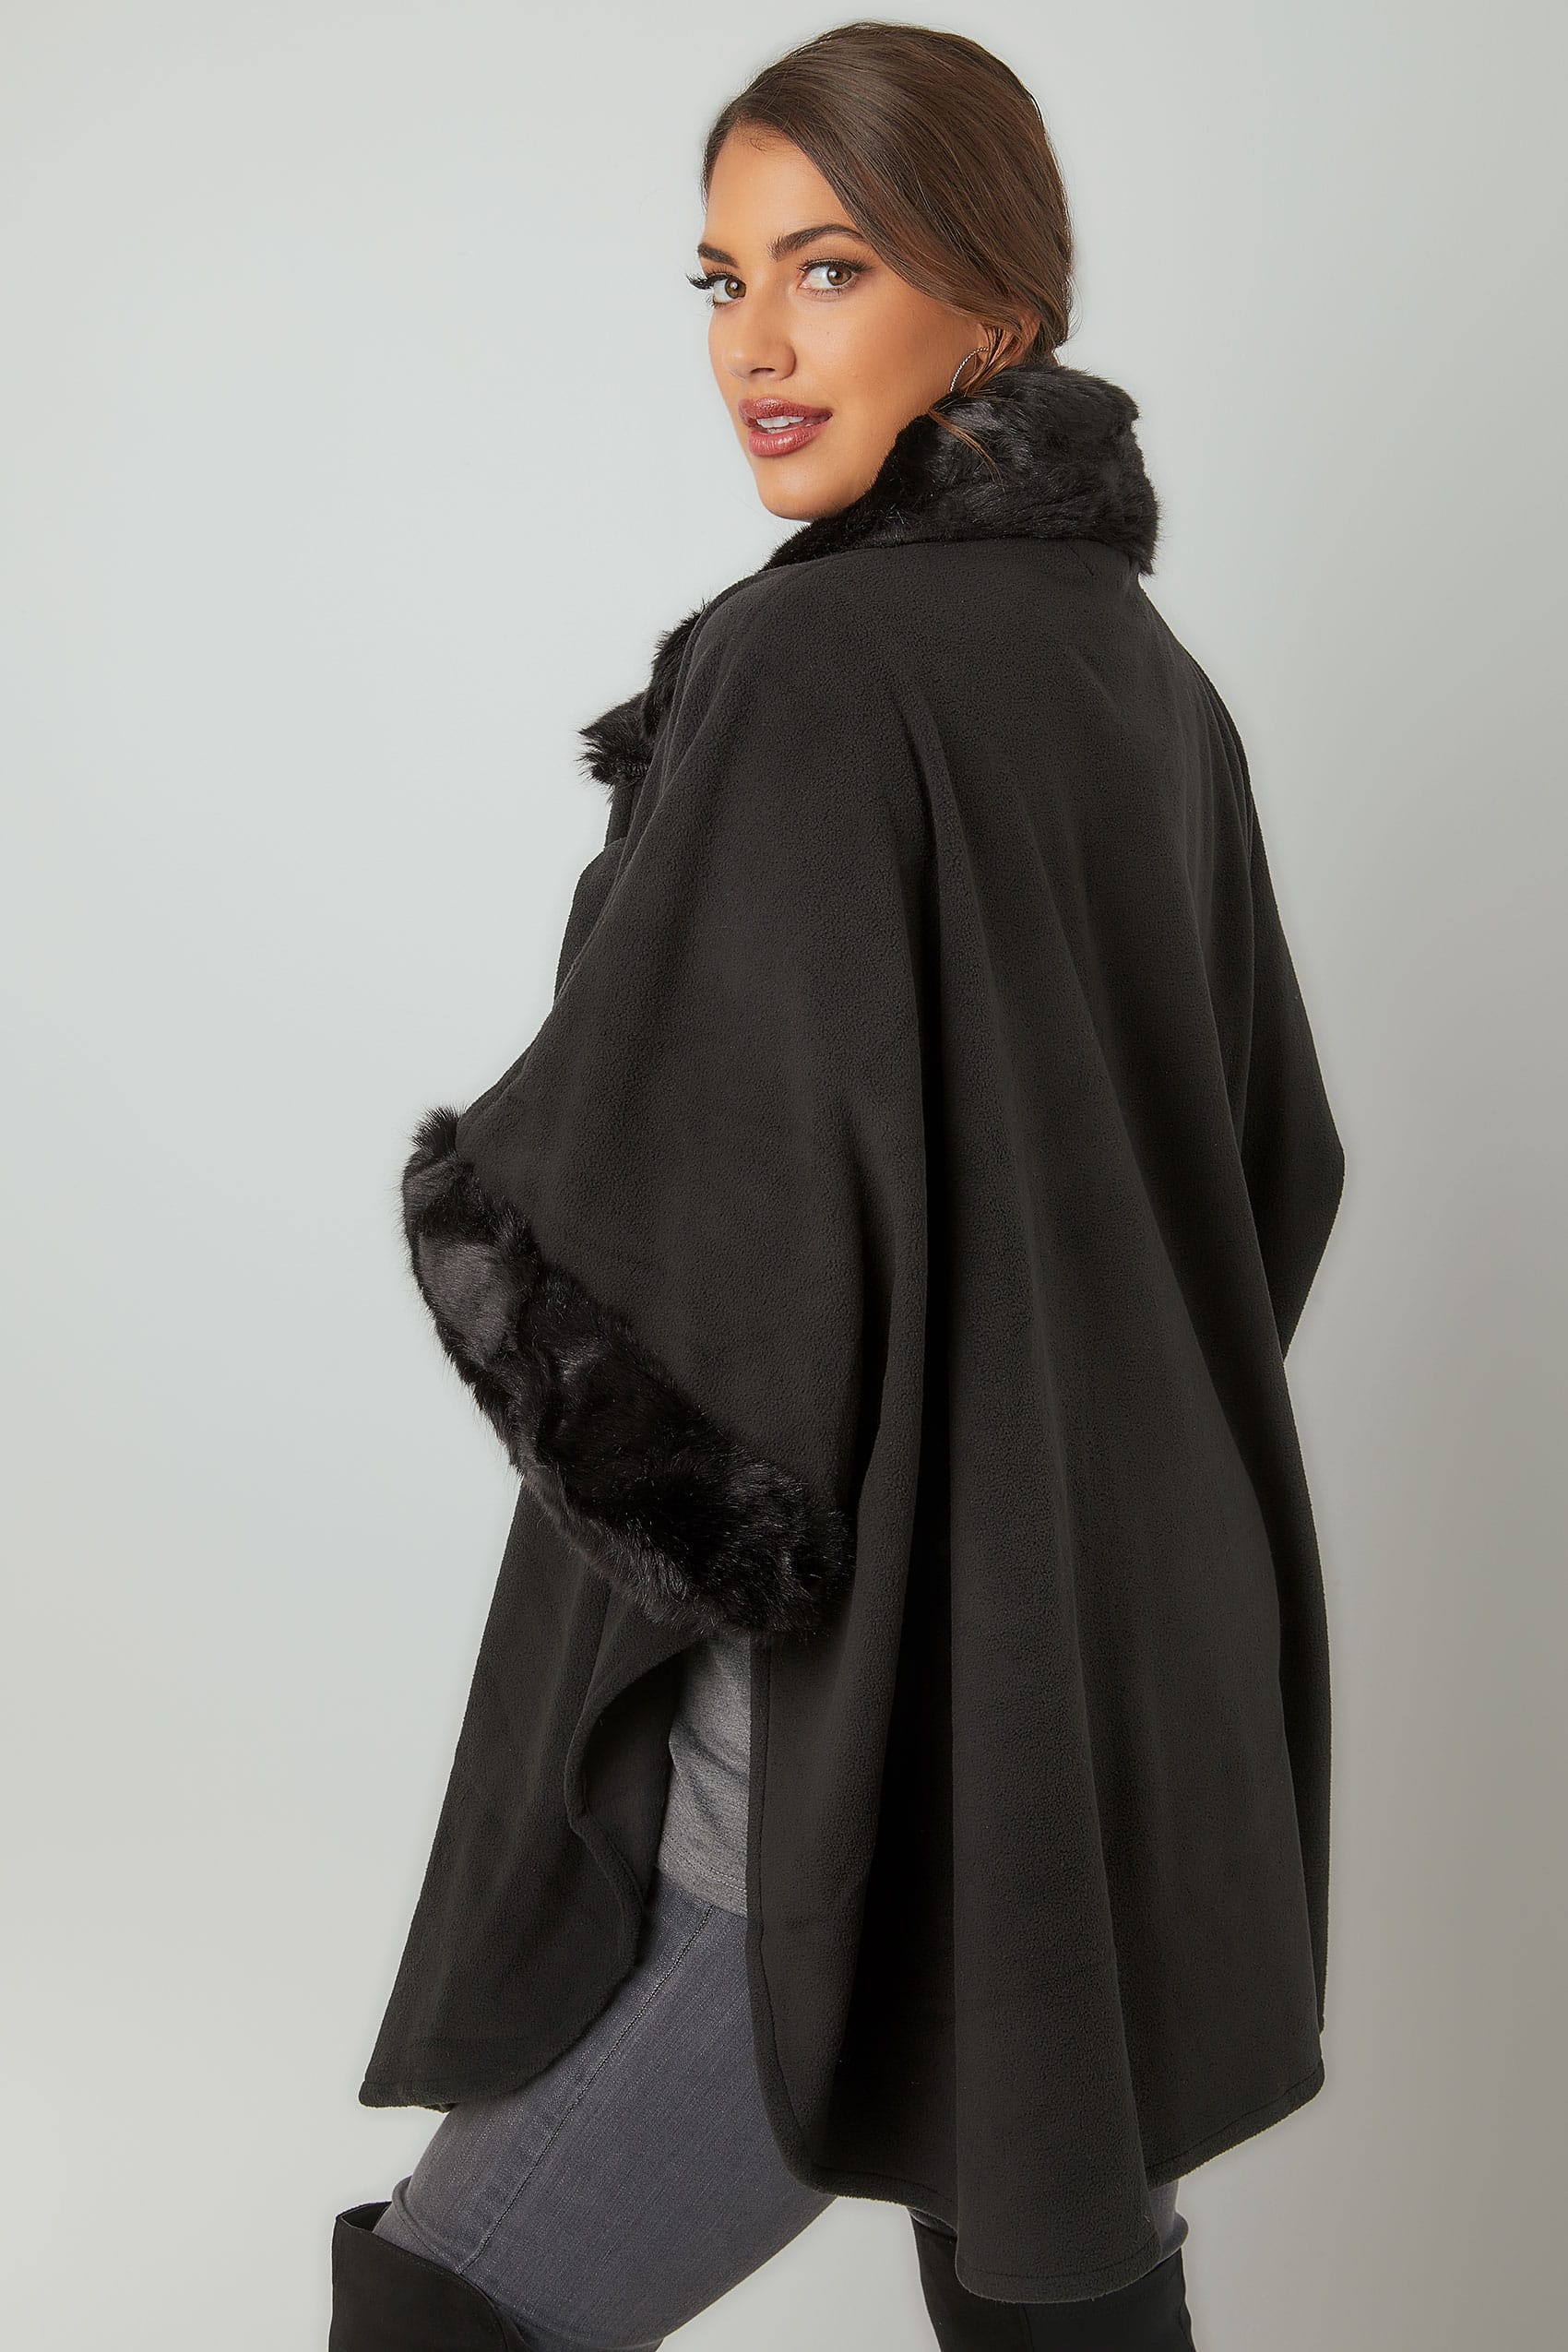 Black Fleece Wrap With Faux Fur Trims, Plus size 16 to 32